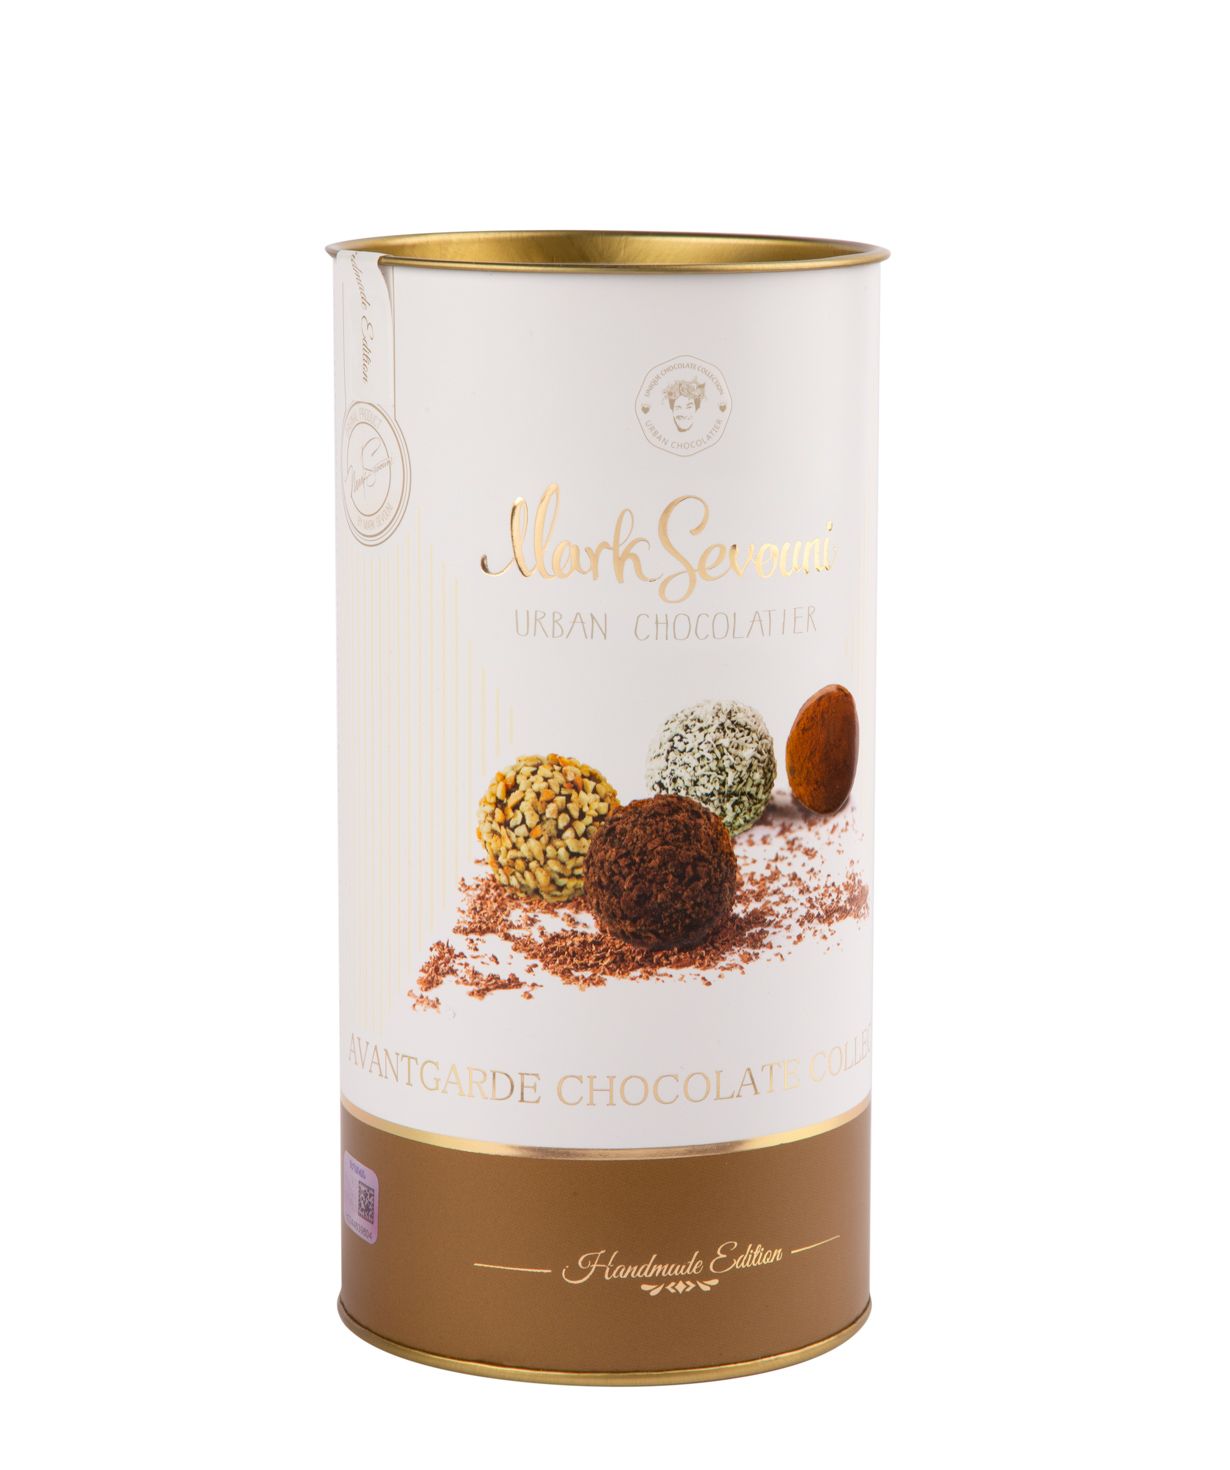 Շոկոլադե հավաքածու «Mark Sevouni» Avangard Chocolate Collection